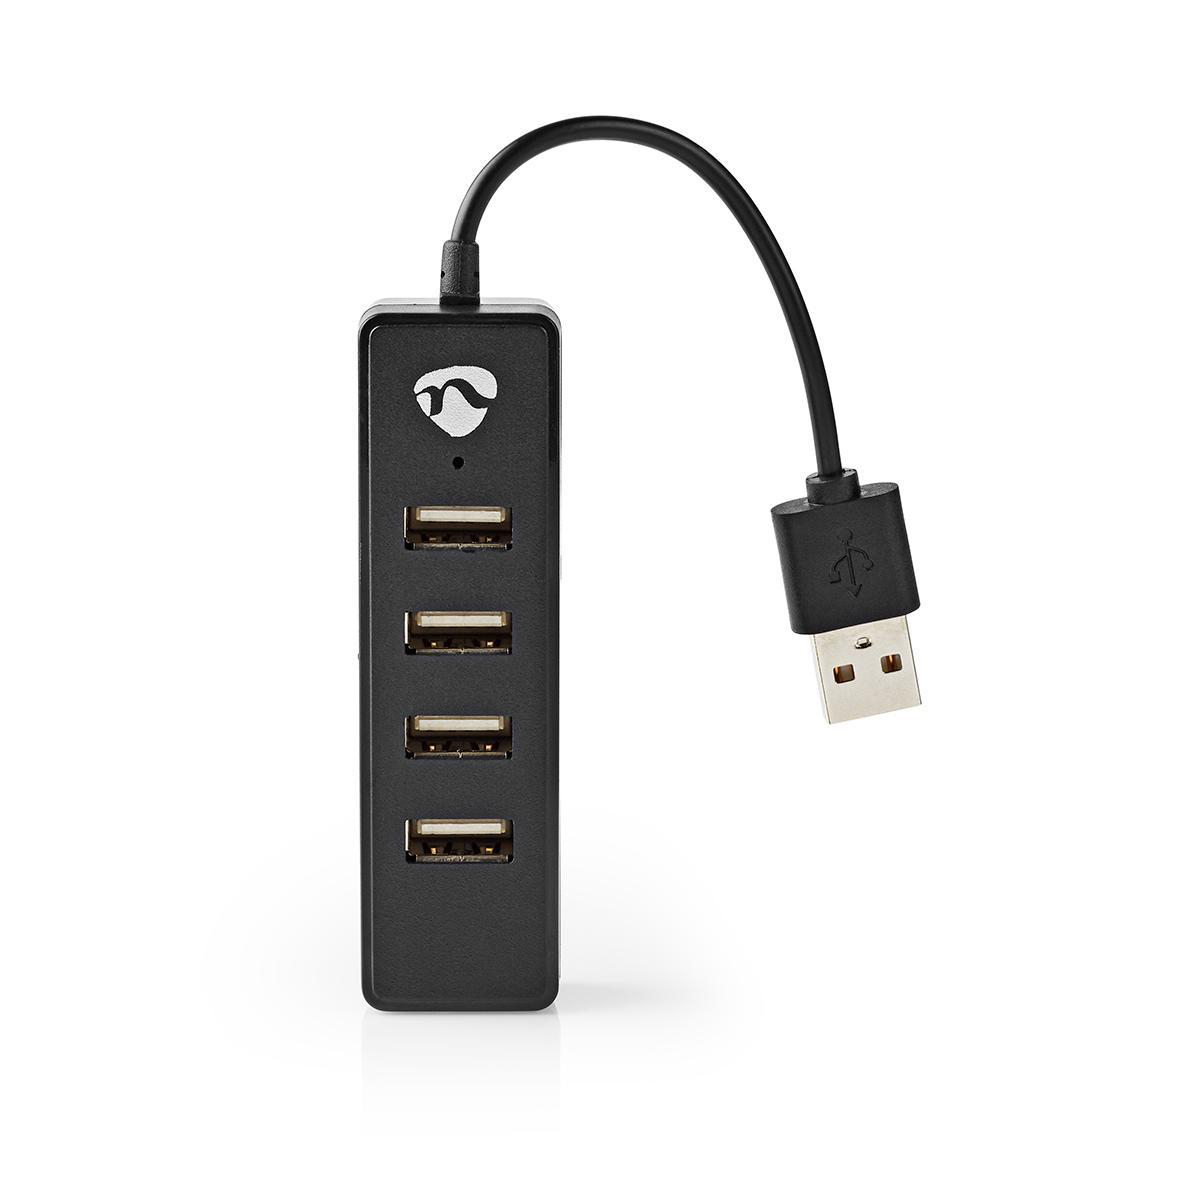 NEDIS USB Rozbočovač | 4portový | USB 2.0 | Černý